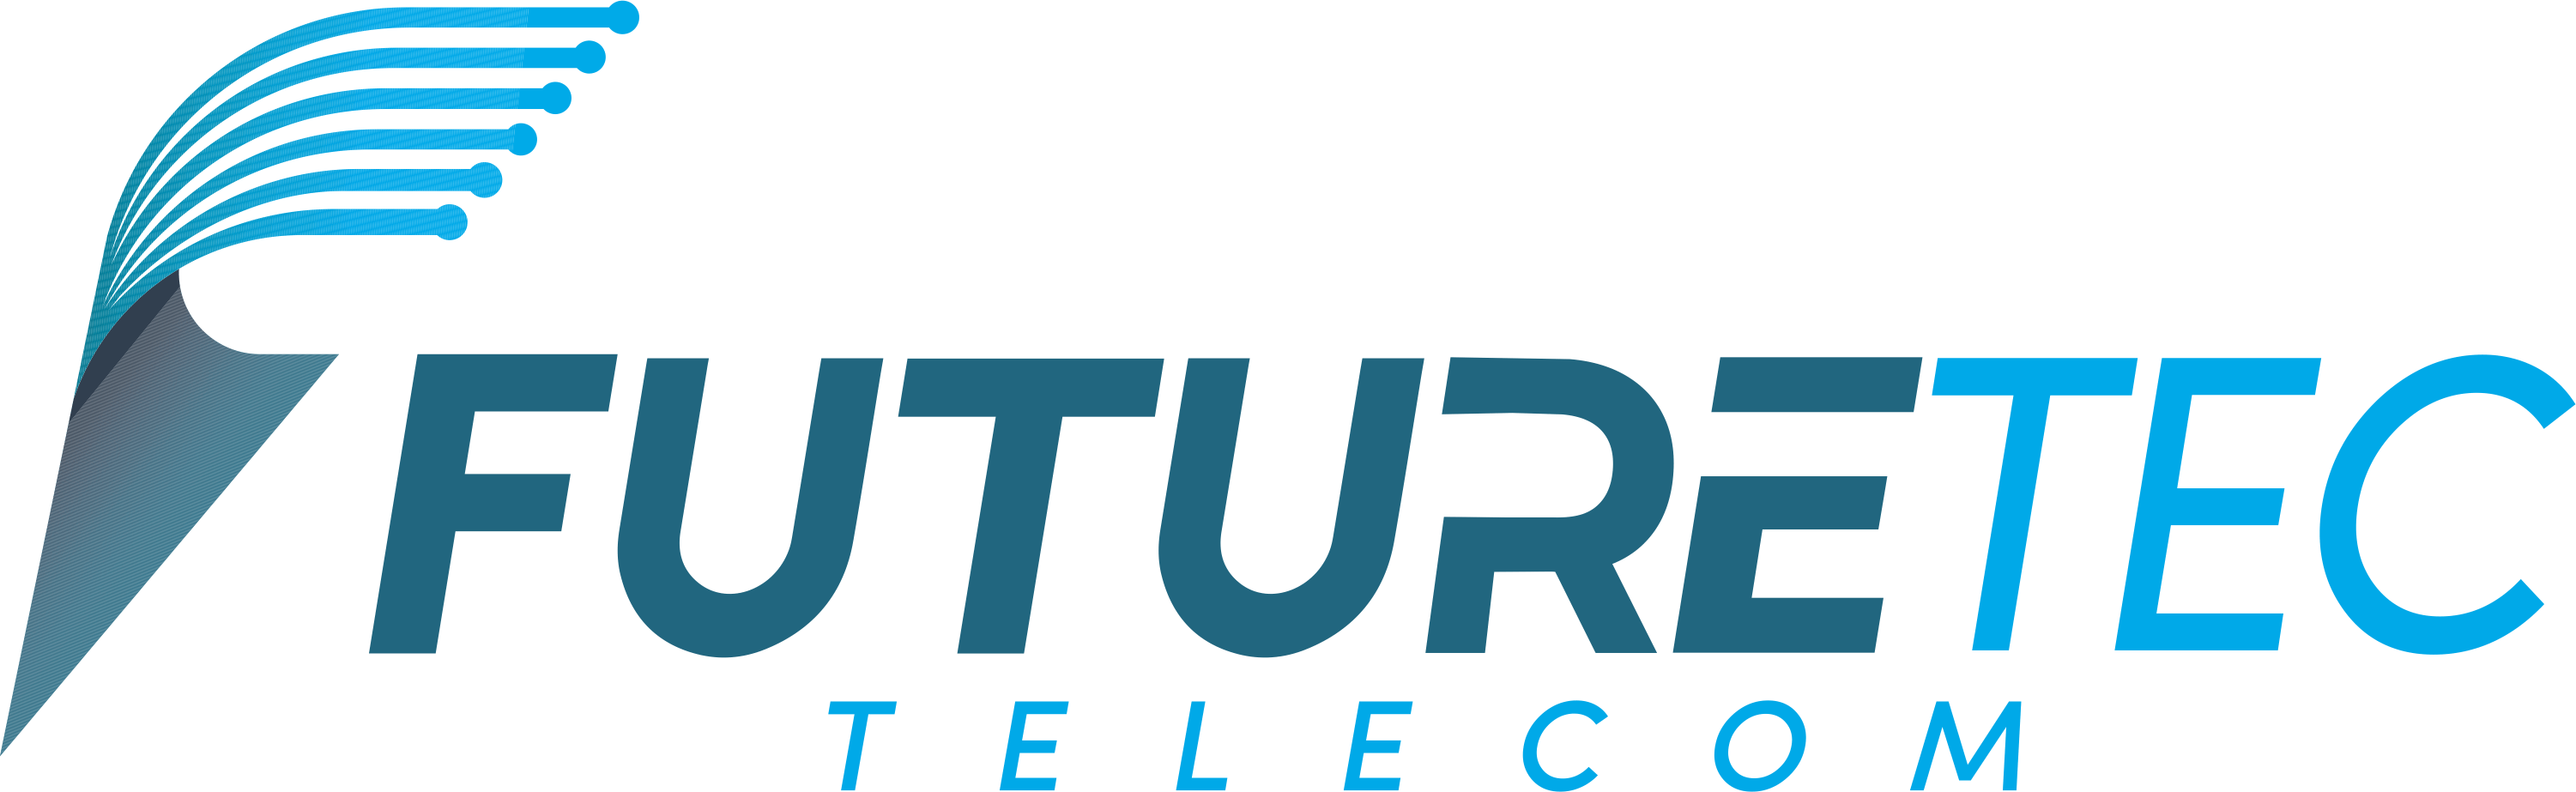 Futuretec Telecom